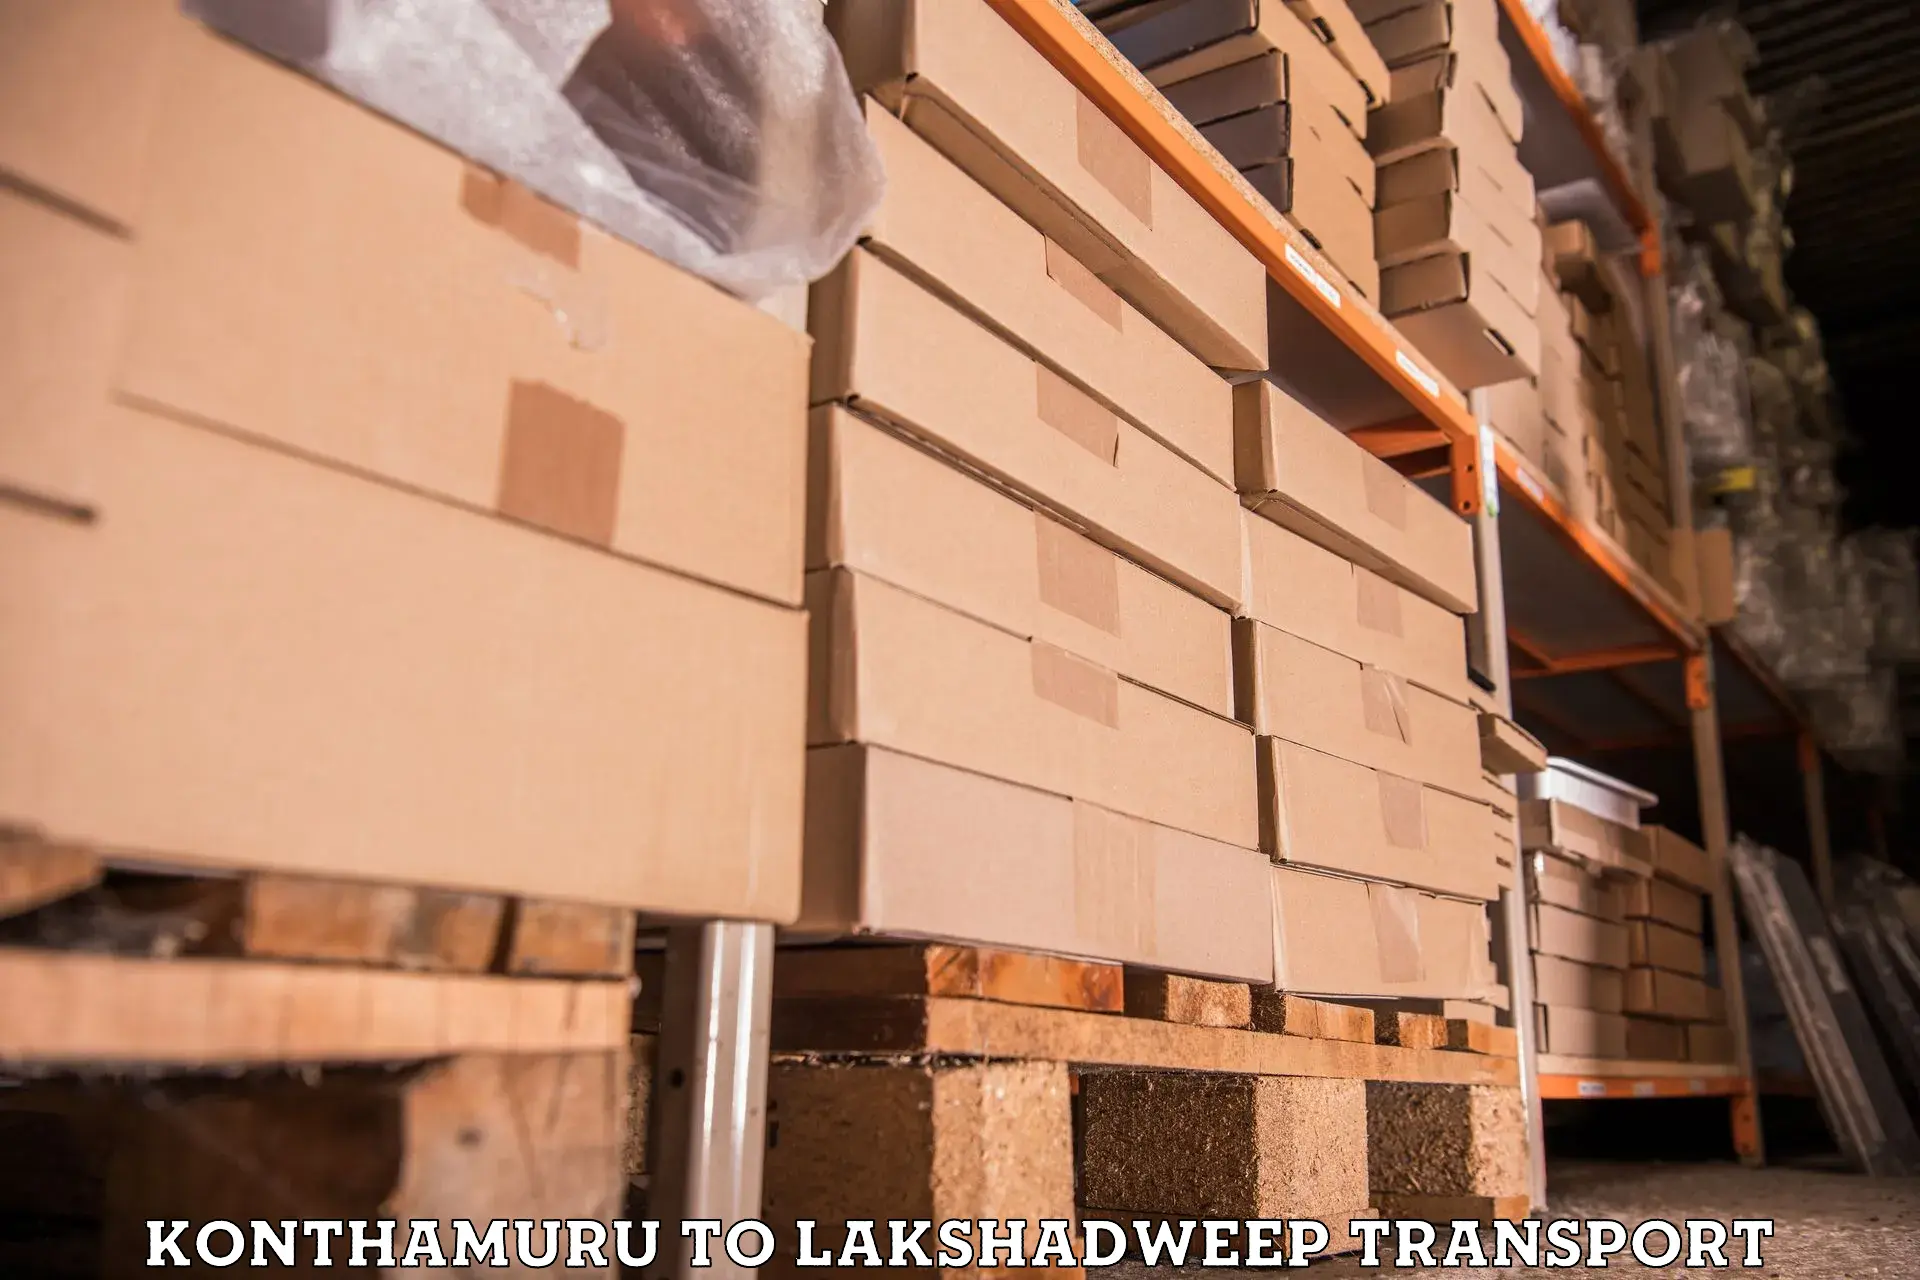 International cargo transportation services Konthamuru to Lakshadweep